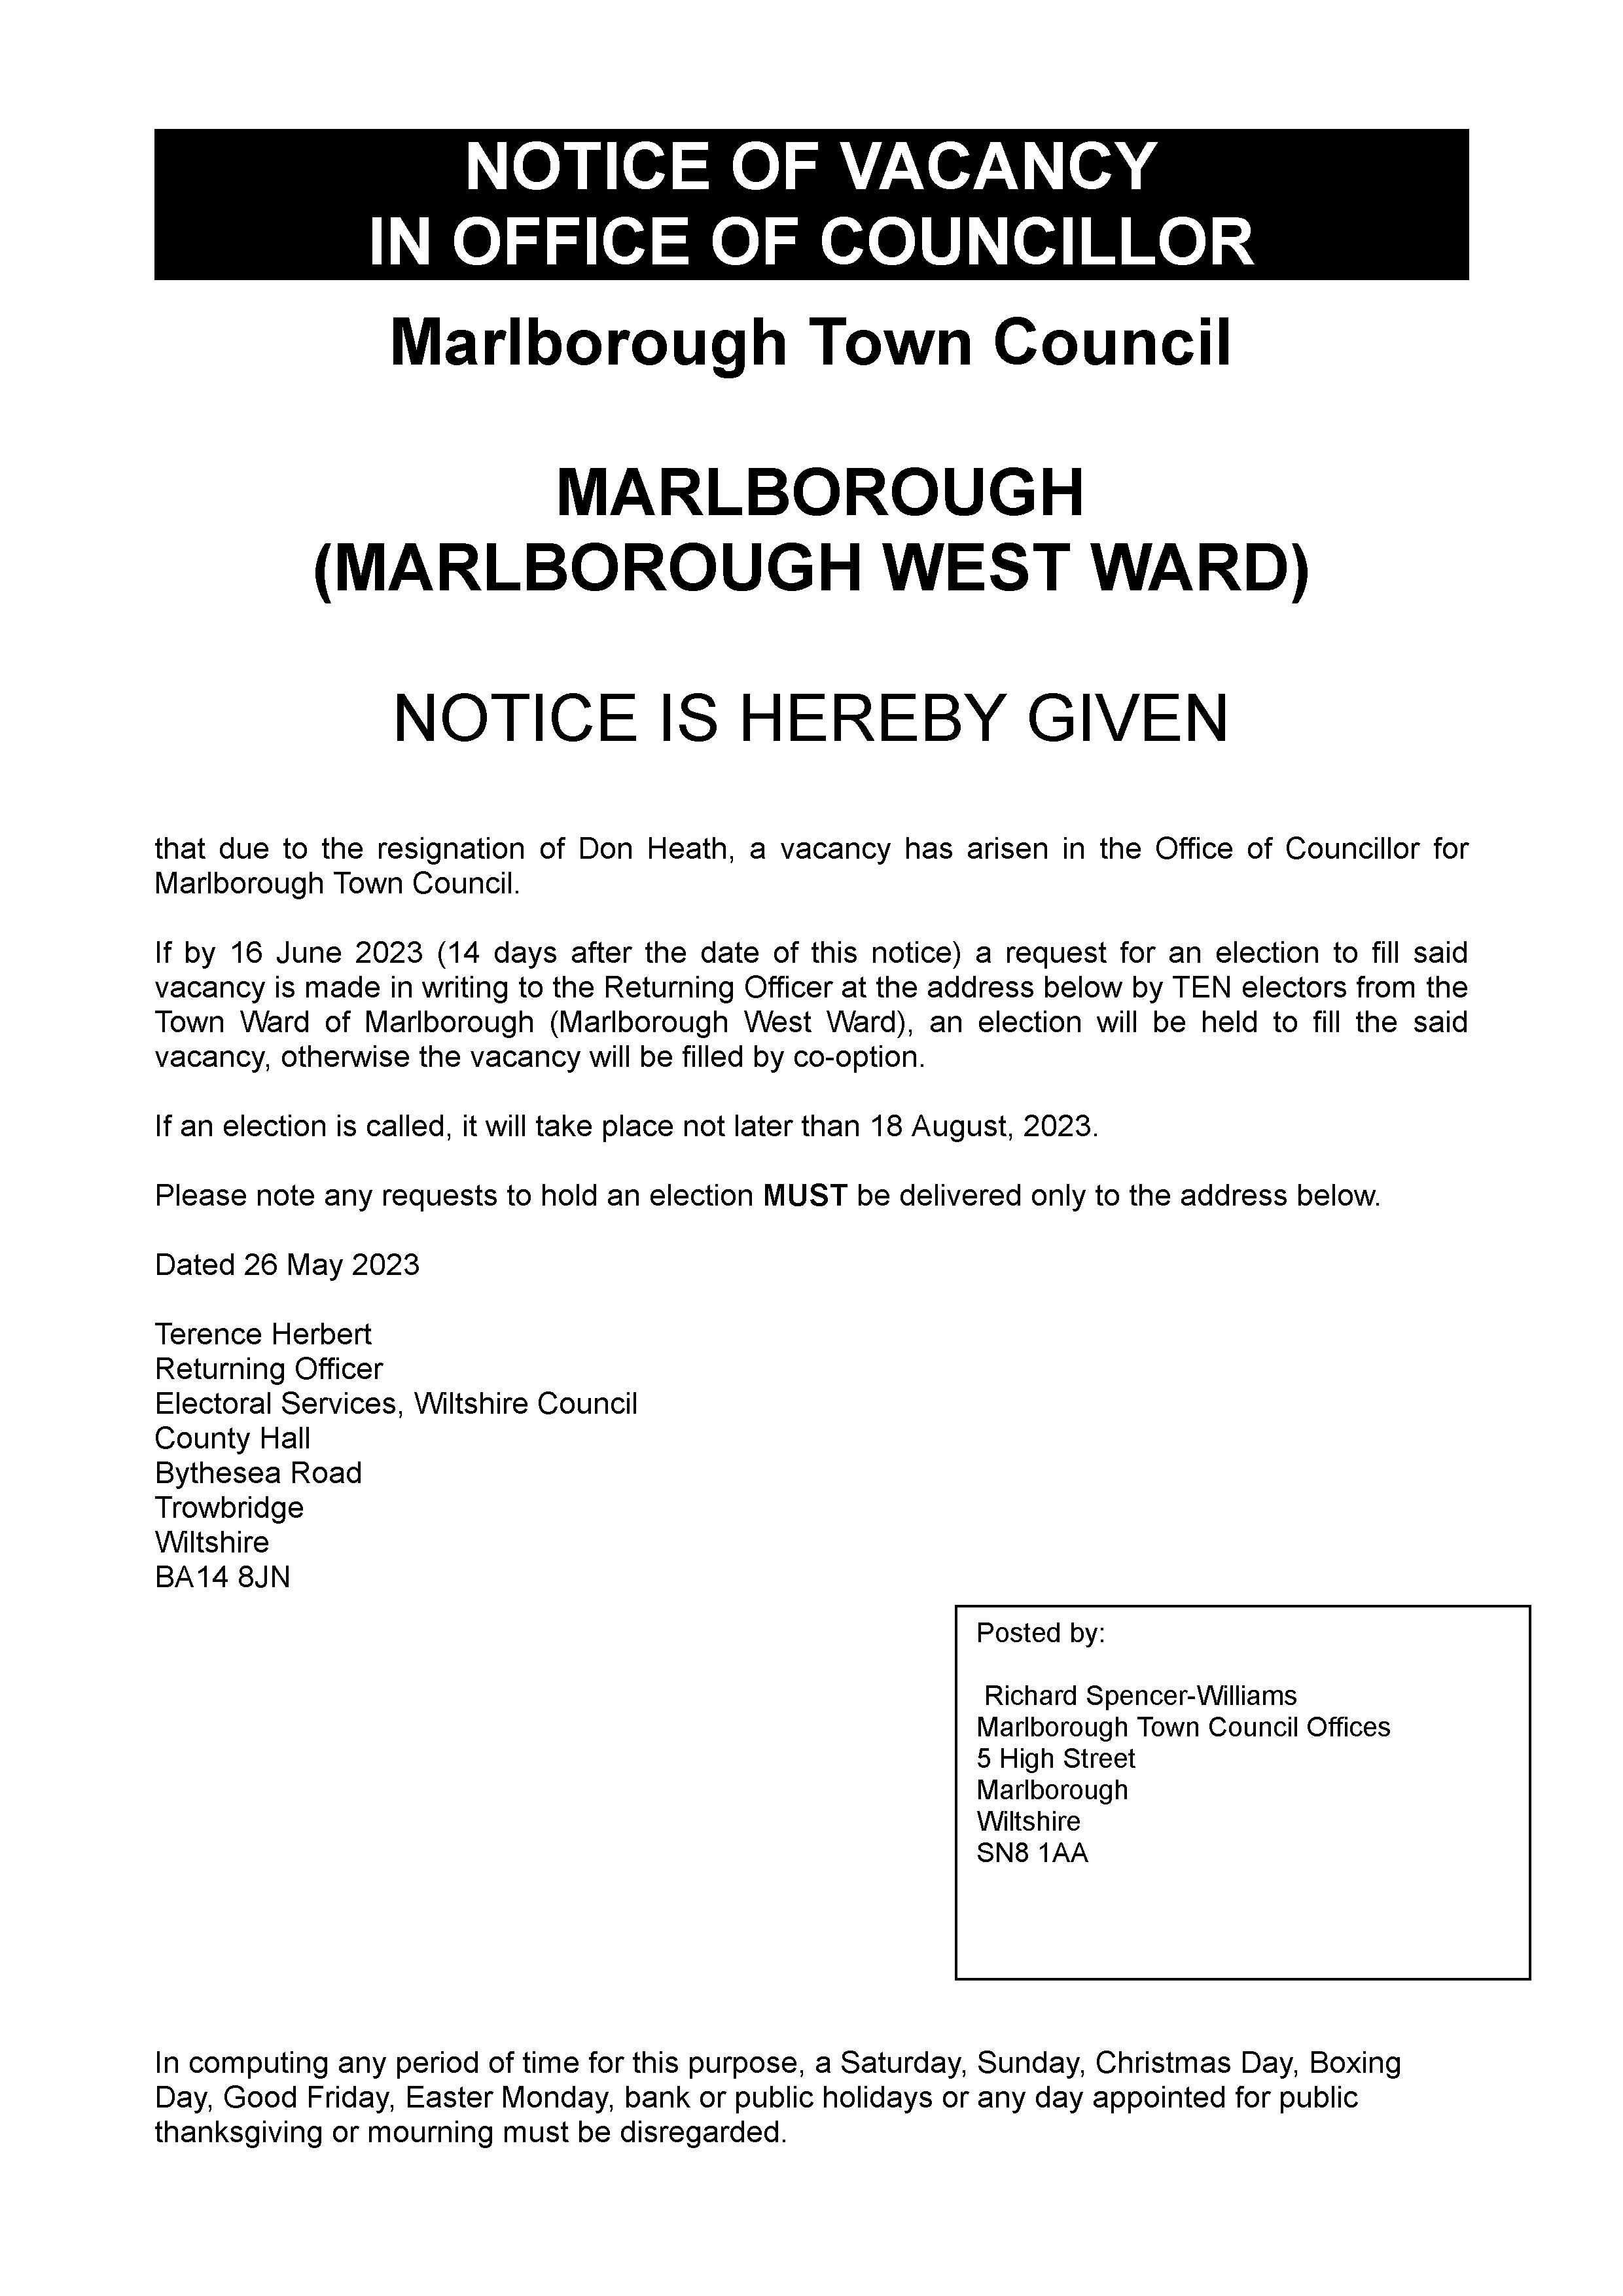 Marlborough-West-Ward-Notice-Of-Vacancy-26May2023